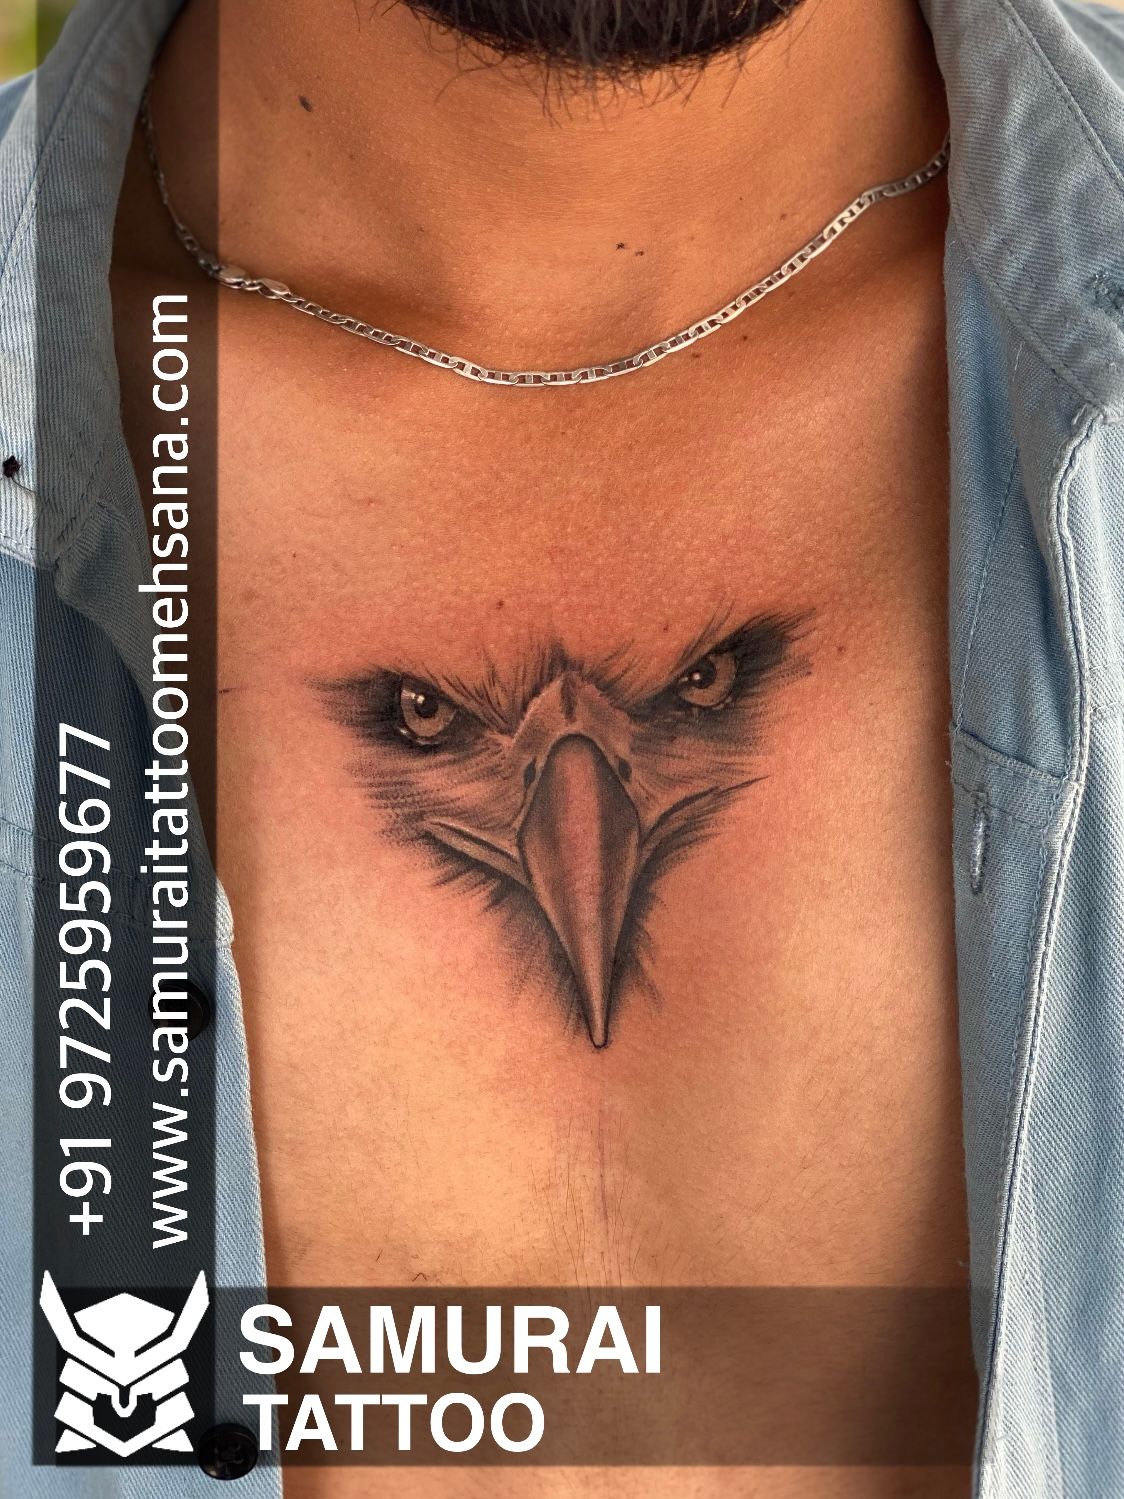 Bald Eagle - Done by Matt Diaz (Guest Artist) at Studio Evolve, in Virginia  Beach, Virginia. : r/tattoos